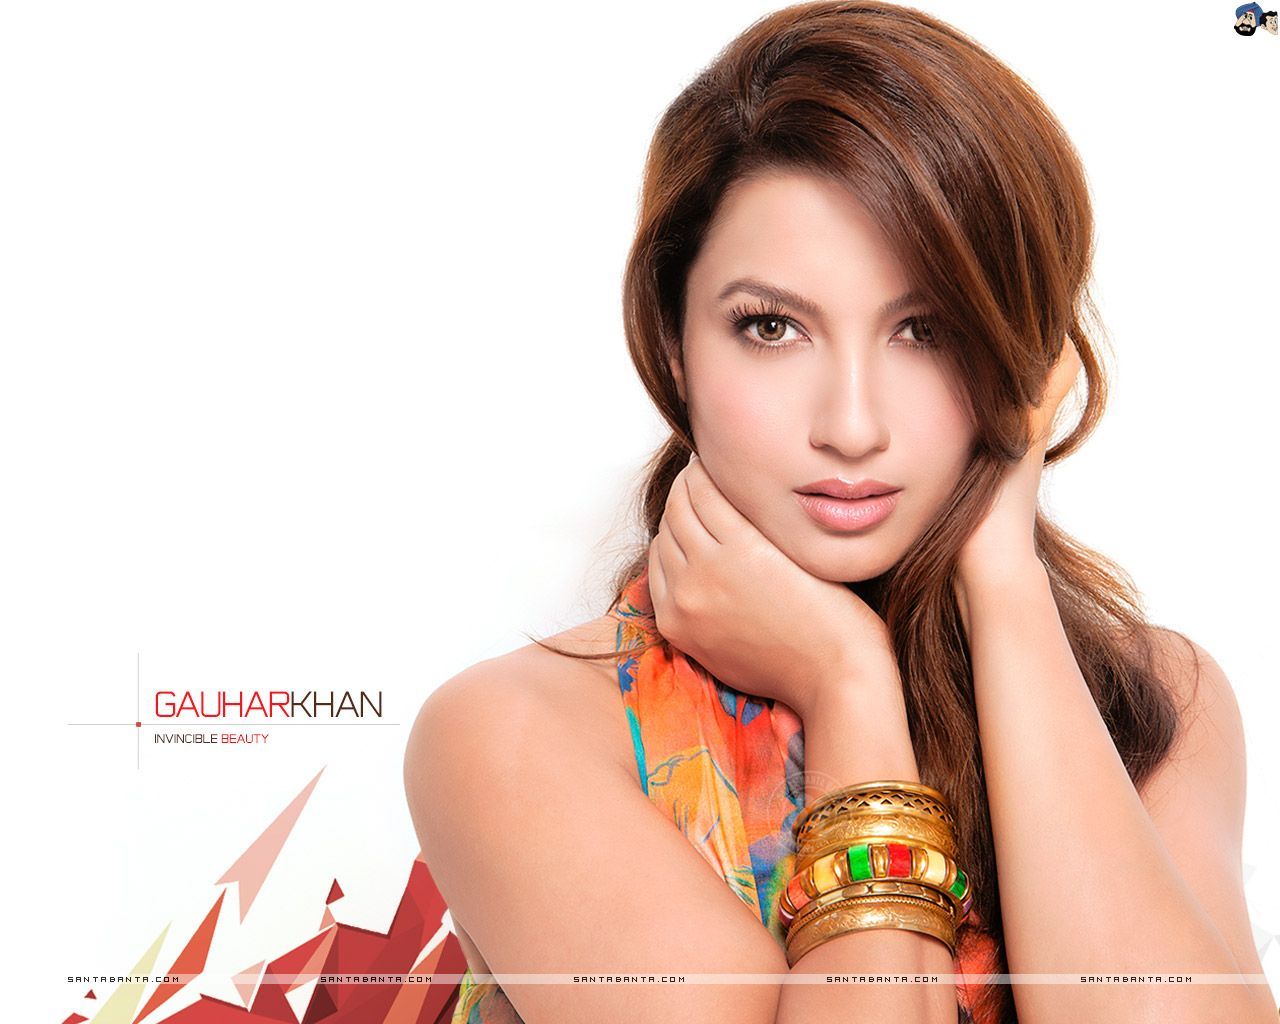 Gauhar Khan Hot HD Wallpaper. Gauhar khan, Bollywood actress